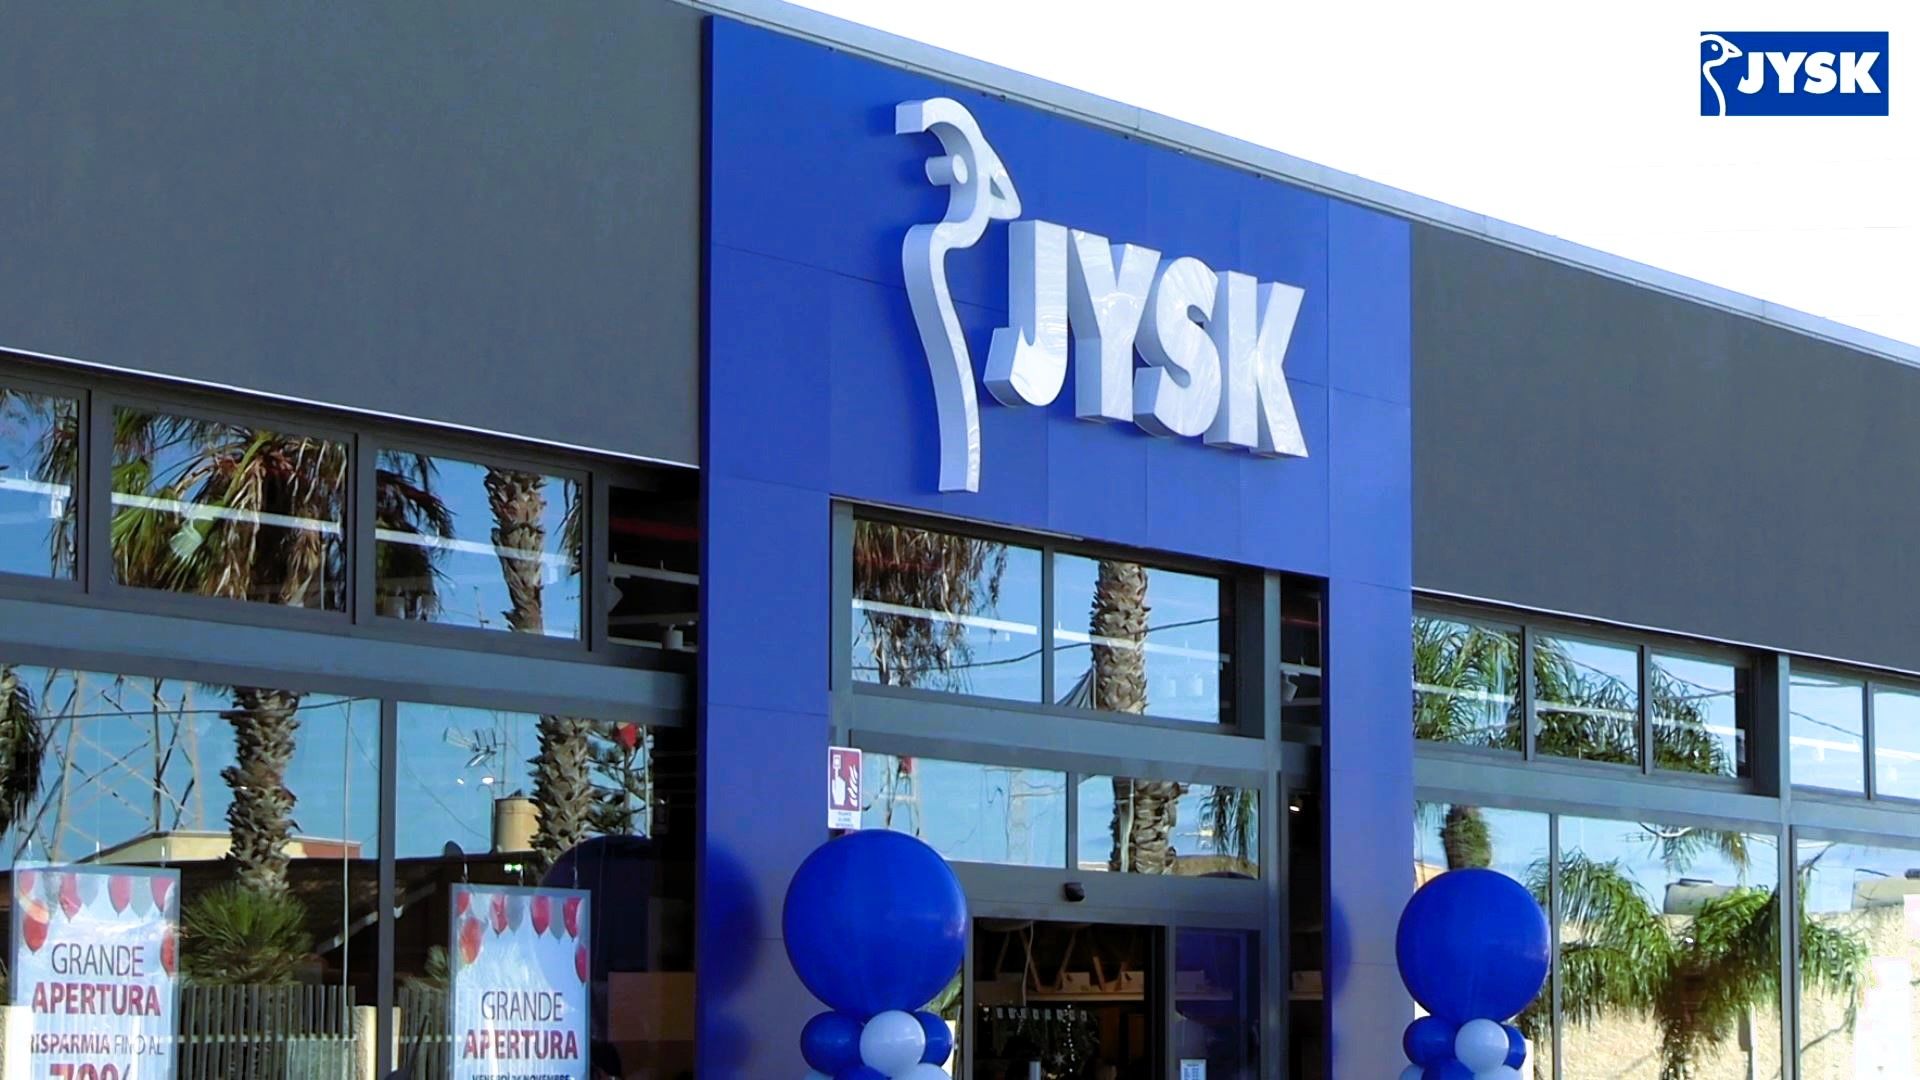 Inaugura venerdì 15 marzo a Udine lo store JYSK, secondo in Friuli-Venezia Giulia, assume e organizza una vendita straordinaria con sconti fino al 70%